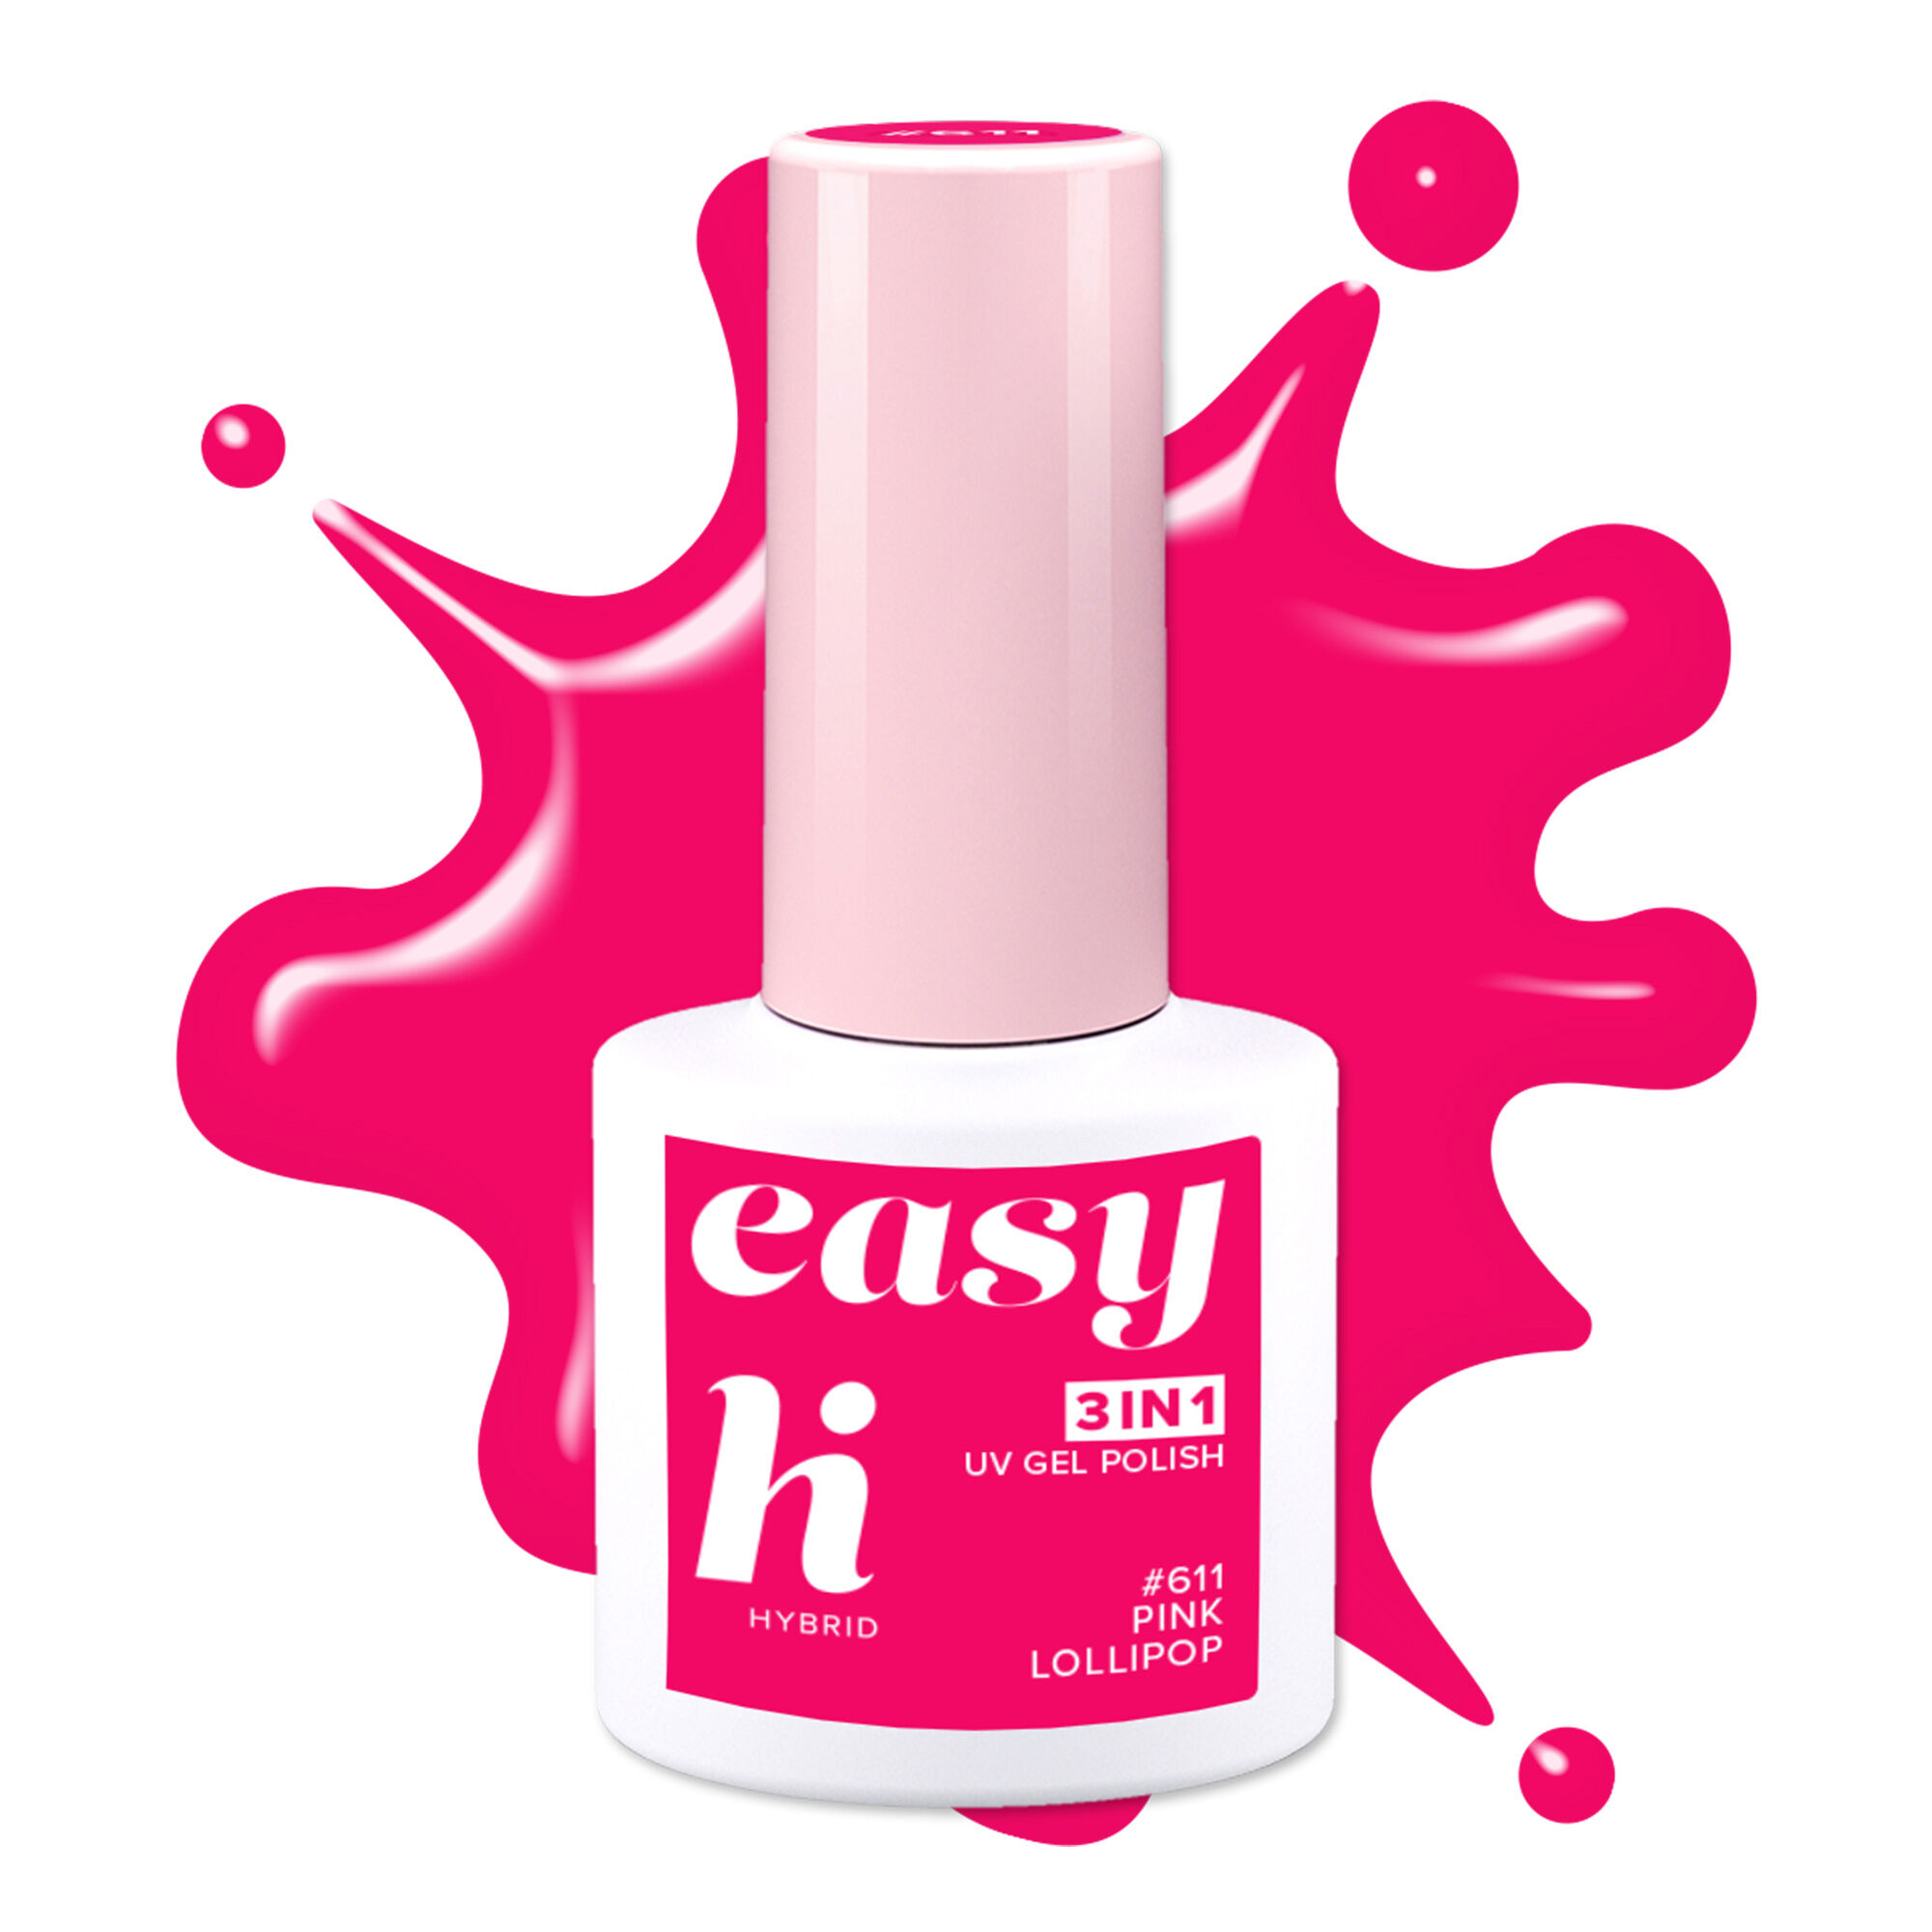 Гибридный лак для ногтей 611 розовый леденец Hi Hybrid Easy 3W1, 5 мл цена и фото